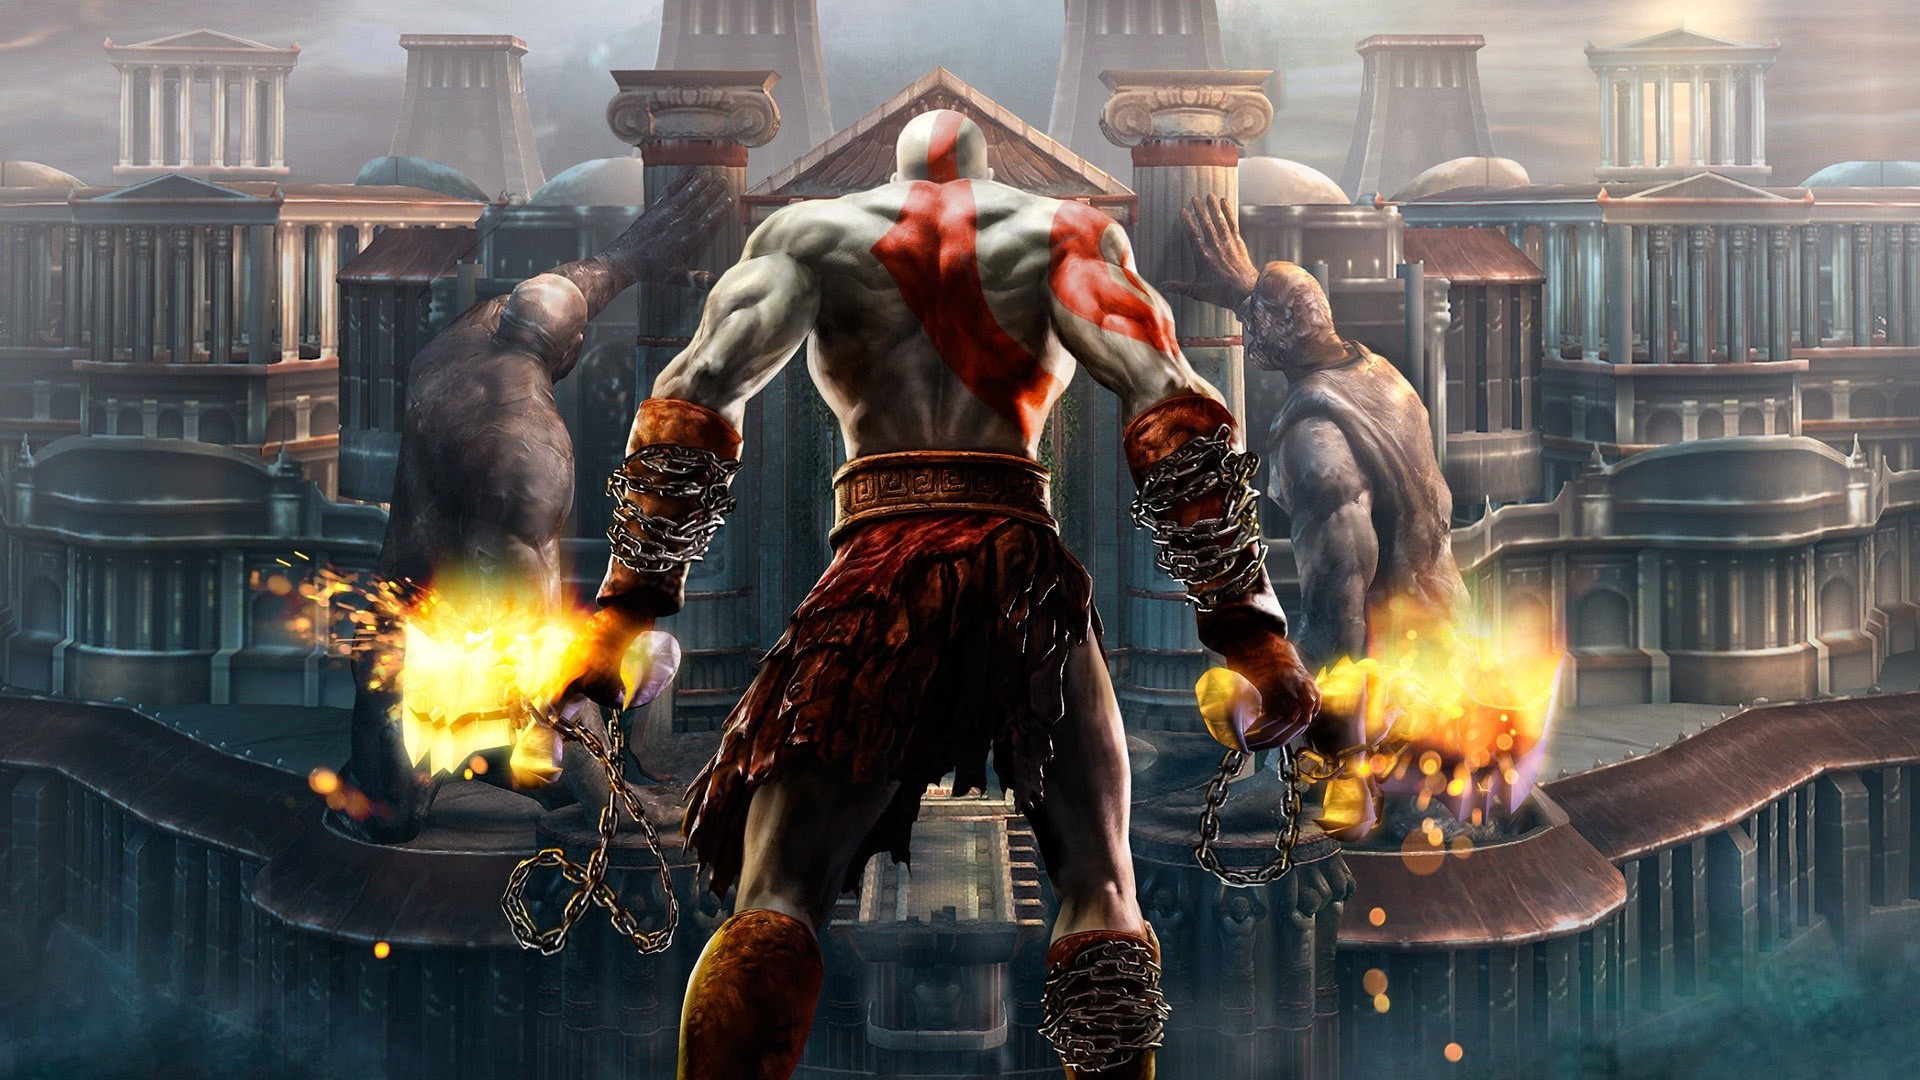 Kratos god of war wallpaper Wallpaper Wide HD